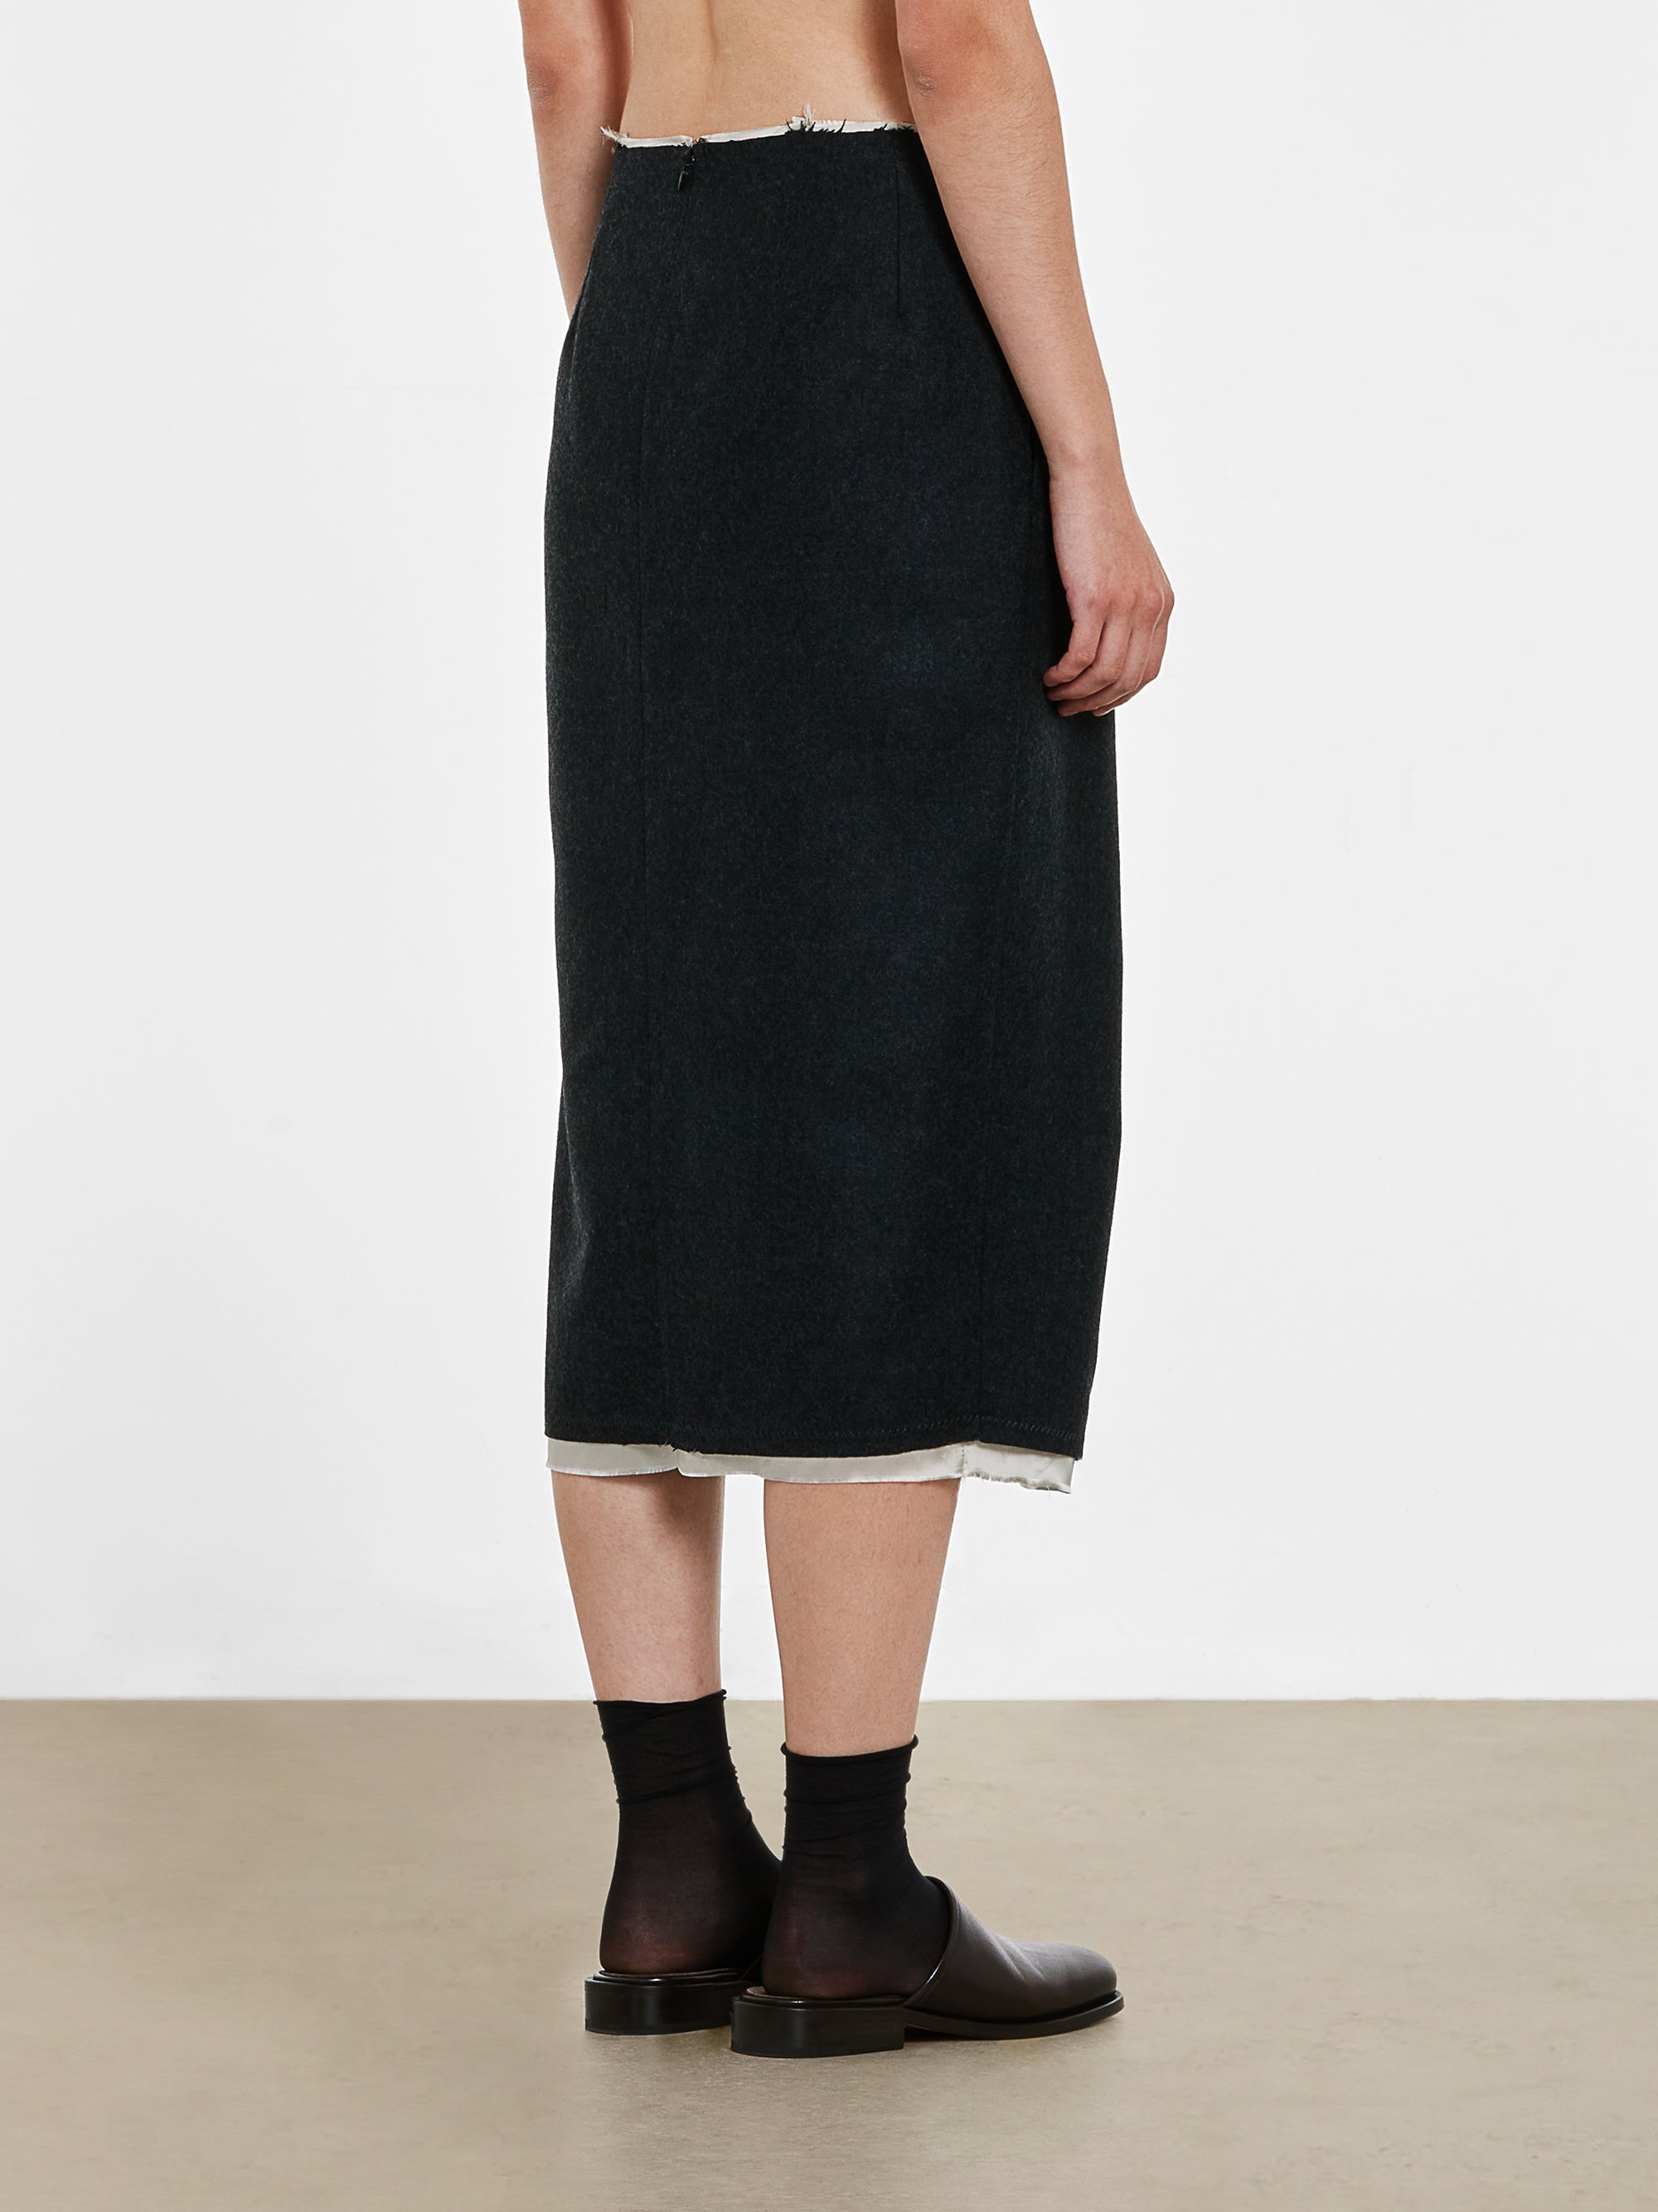 Dries Van Noten - Women’s Front Slit Skirt - (Anthracite) view 3